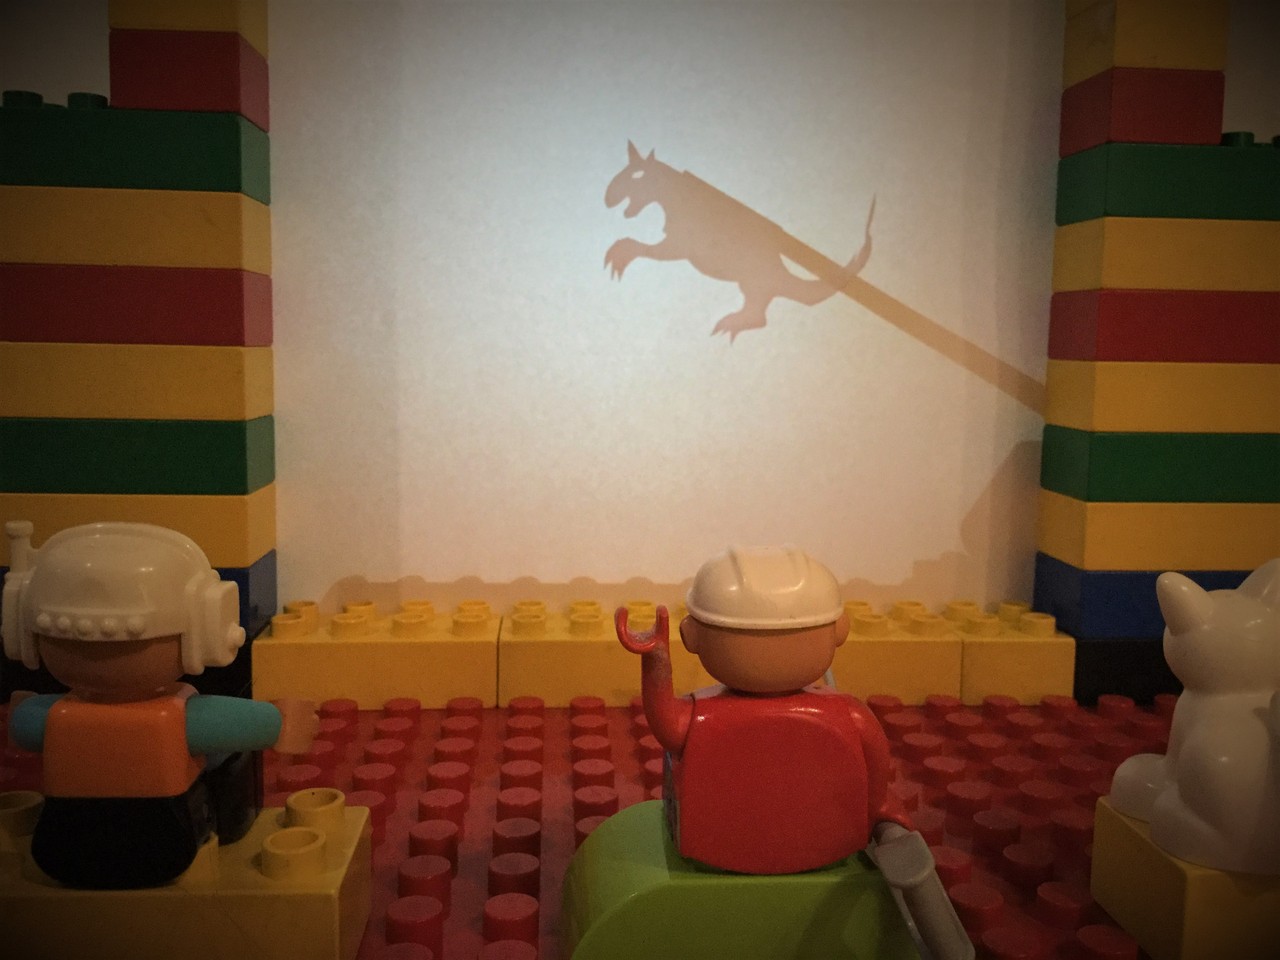 Das Foto zeigt ein Schattentheaterspiel. Ein Drache ist auf der Leinwand zu sehen. Kleine Spielfiguren beobachten das Schauspiel. Die Figur in der Mitte hebt begeistert die Hand.